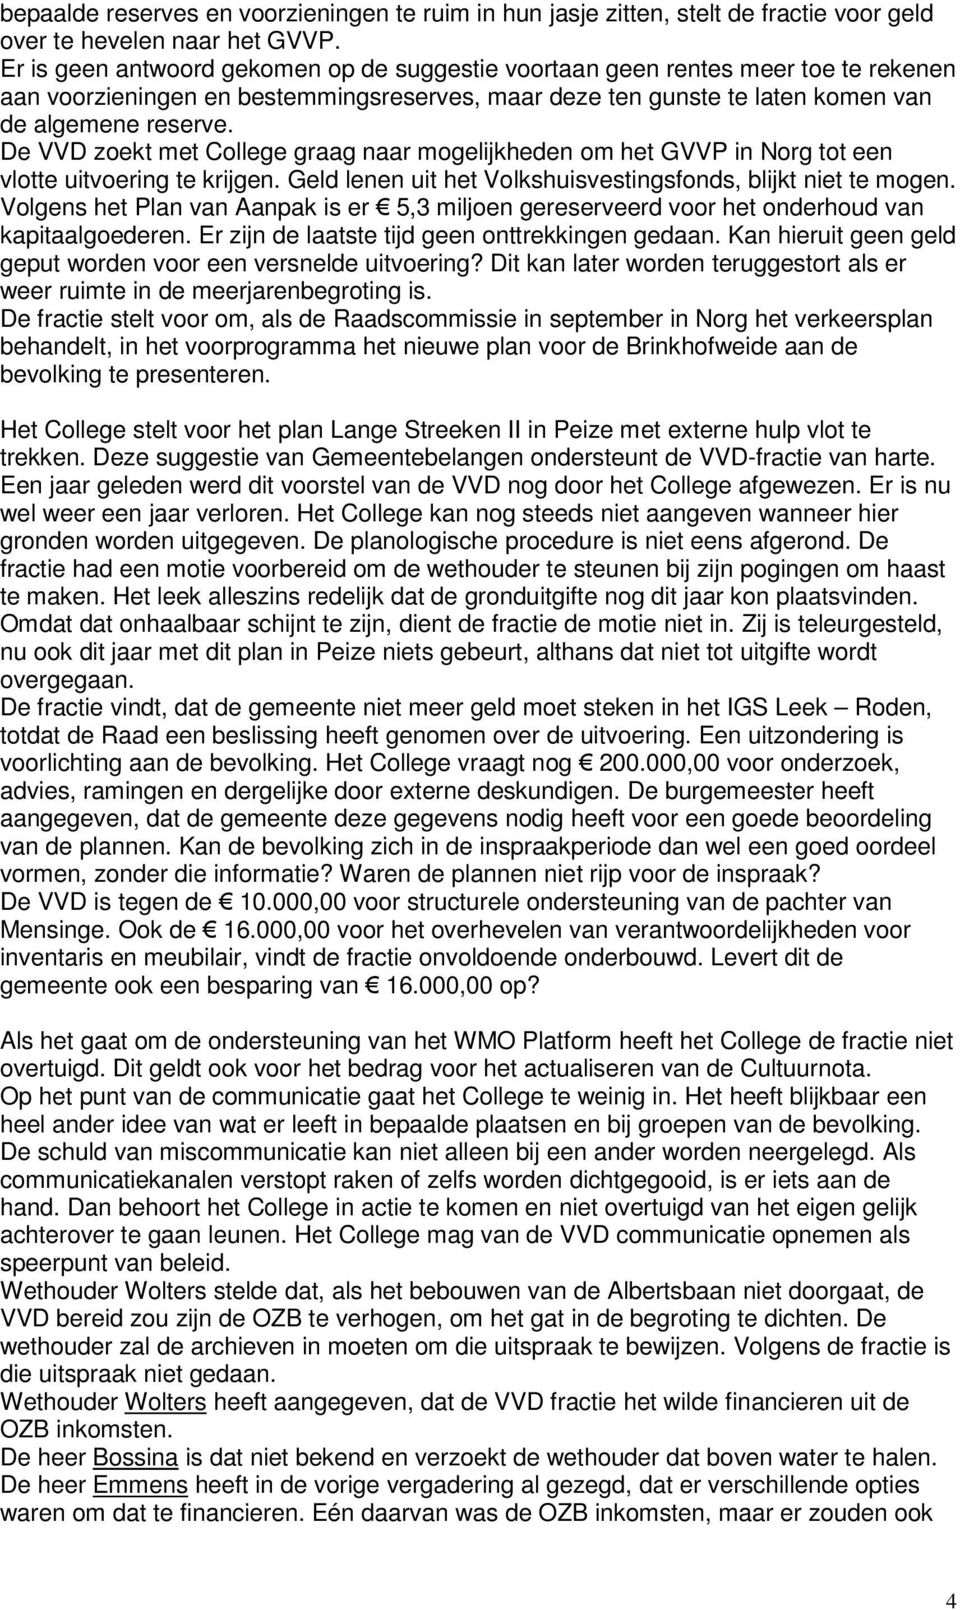 De VVD zoekt met College graag naar mogelijkheden om het GVVP in Norg tot een vlotte uitvoering te krijgen. Geld lenen uit het Volkshuisvestingsfonds, blijkt niet te mogen.